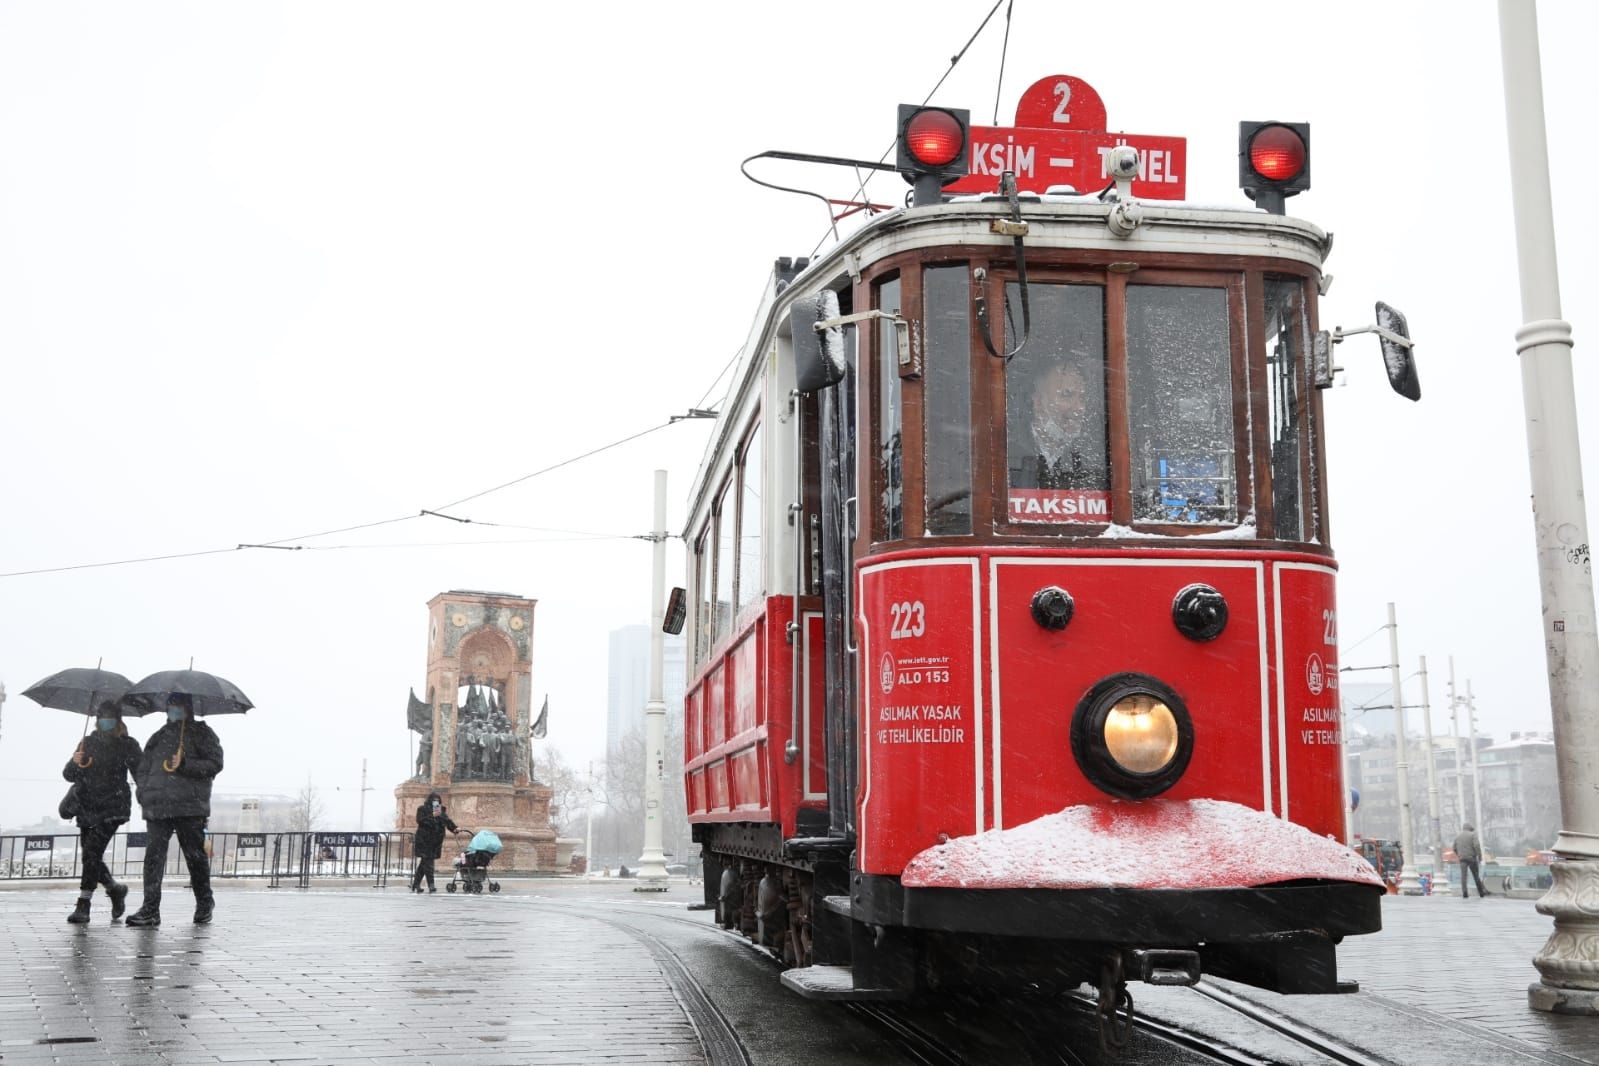 AKOM’dan İstanbul için karla karışık yağmur uyarısı